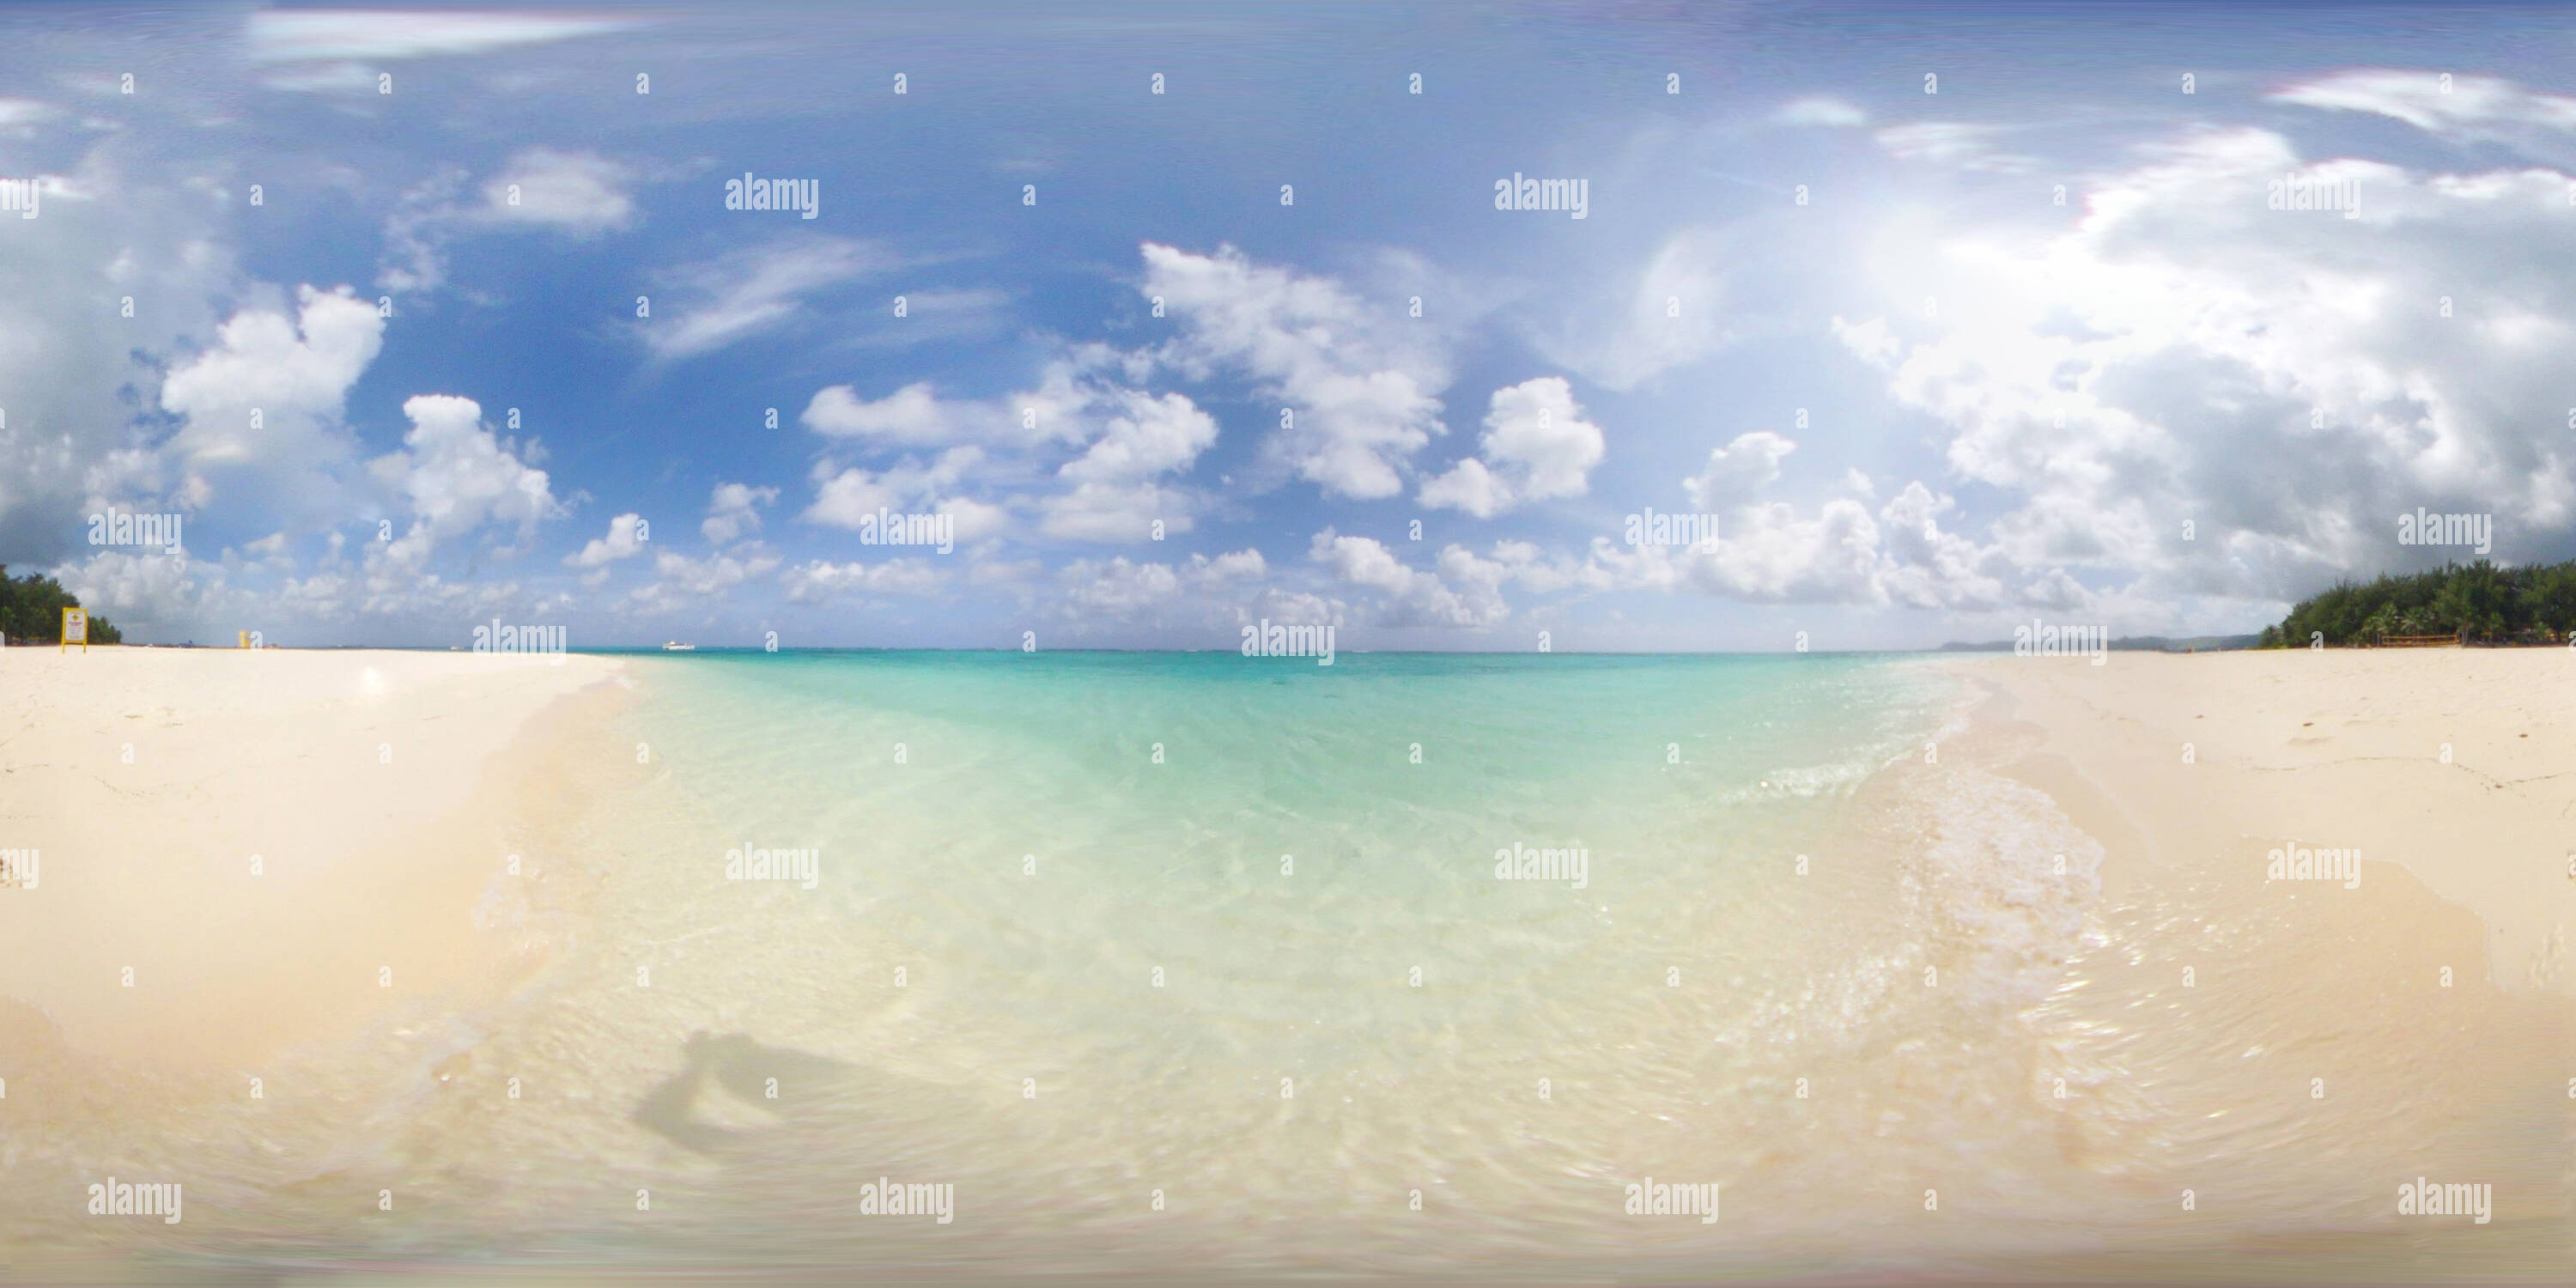 360 degree panoramic view of Beach of Managaha island